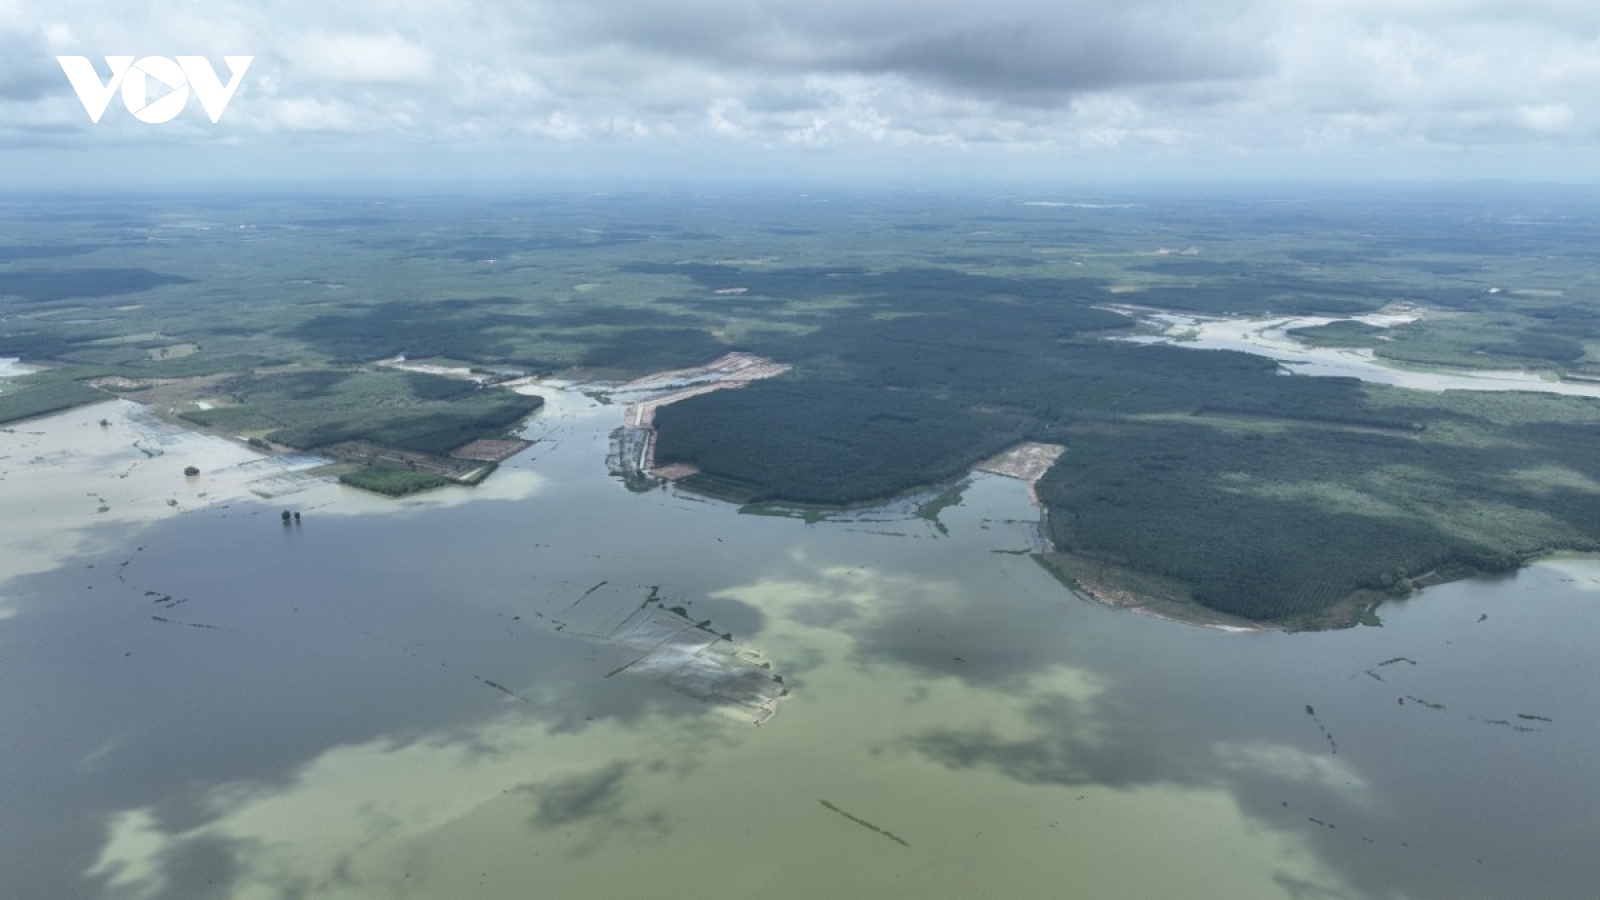 Bình Thuận thông tin về công trình bị cho là hoang phí ở hồ Biển Lạc